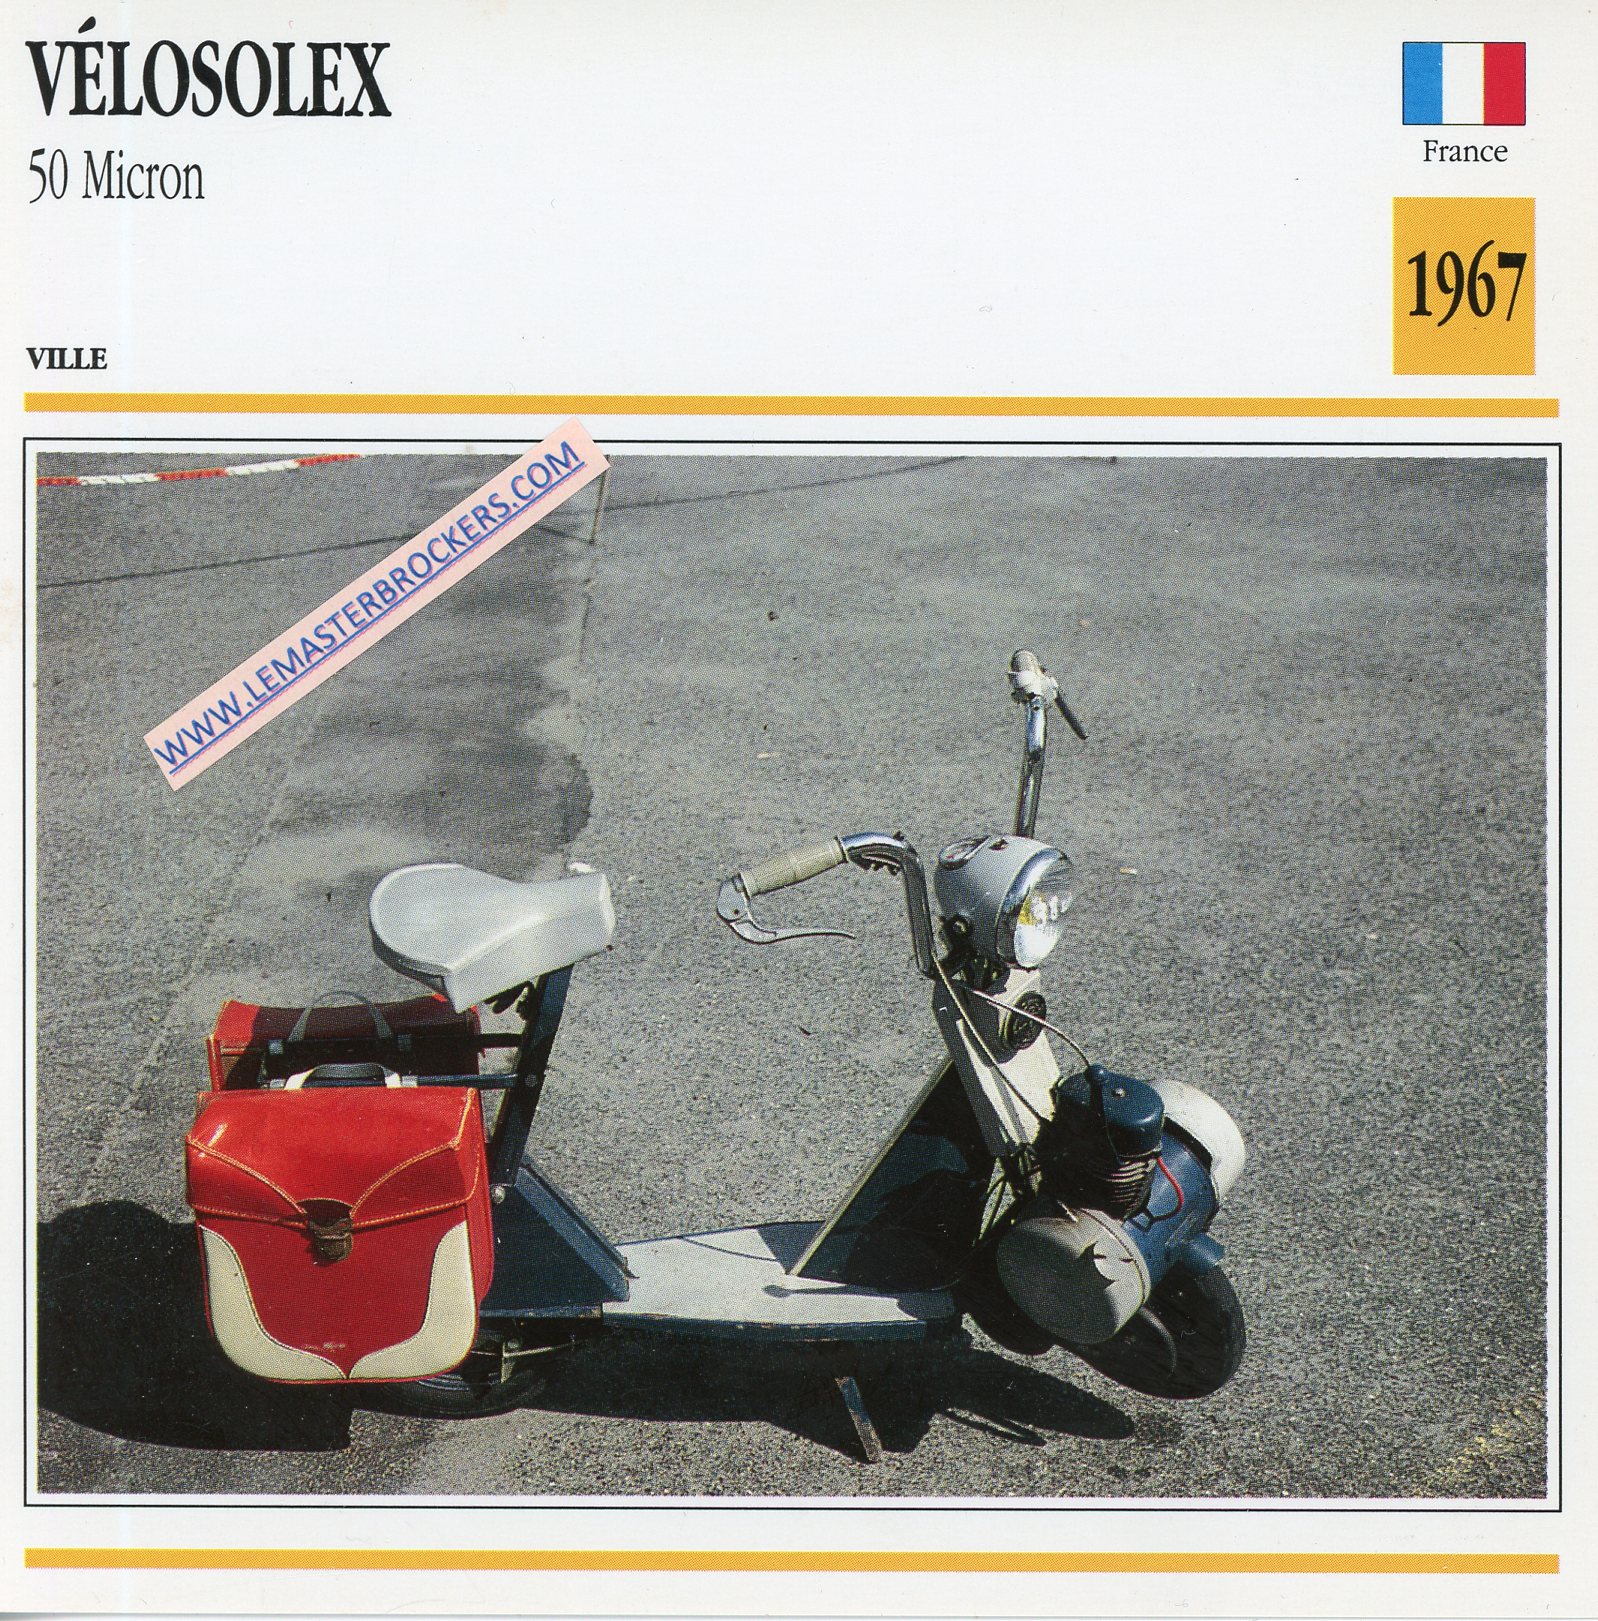 FICHE VÉLOSOLEX 50 MICRON 1967